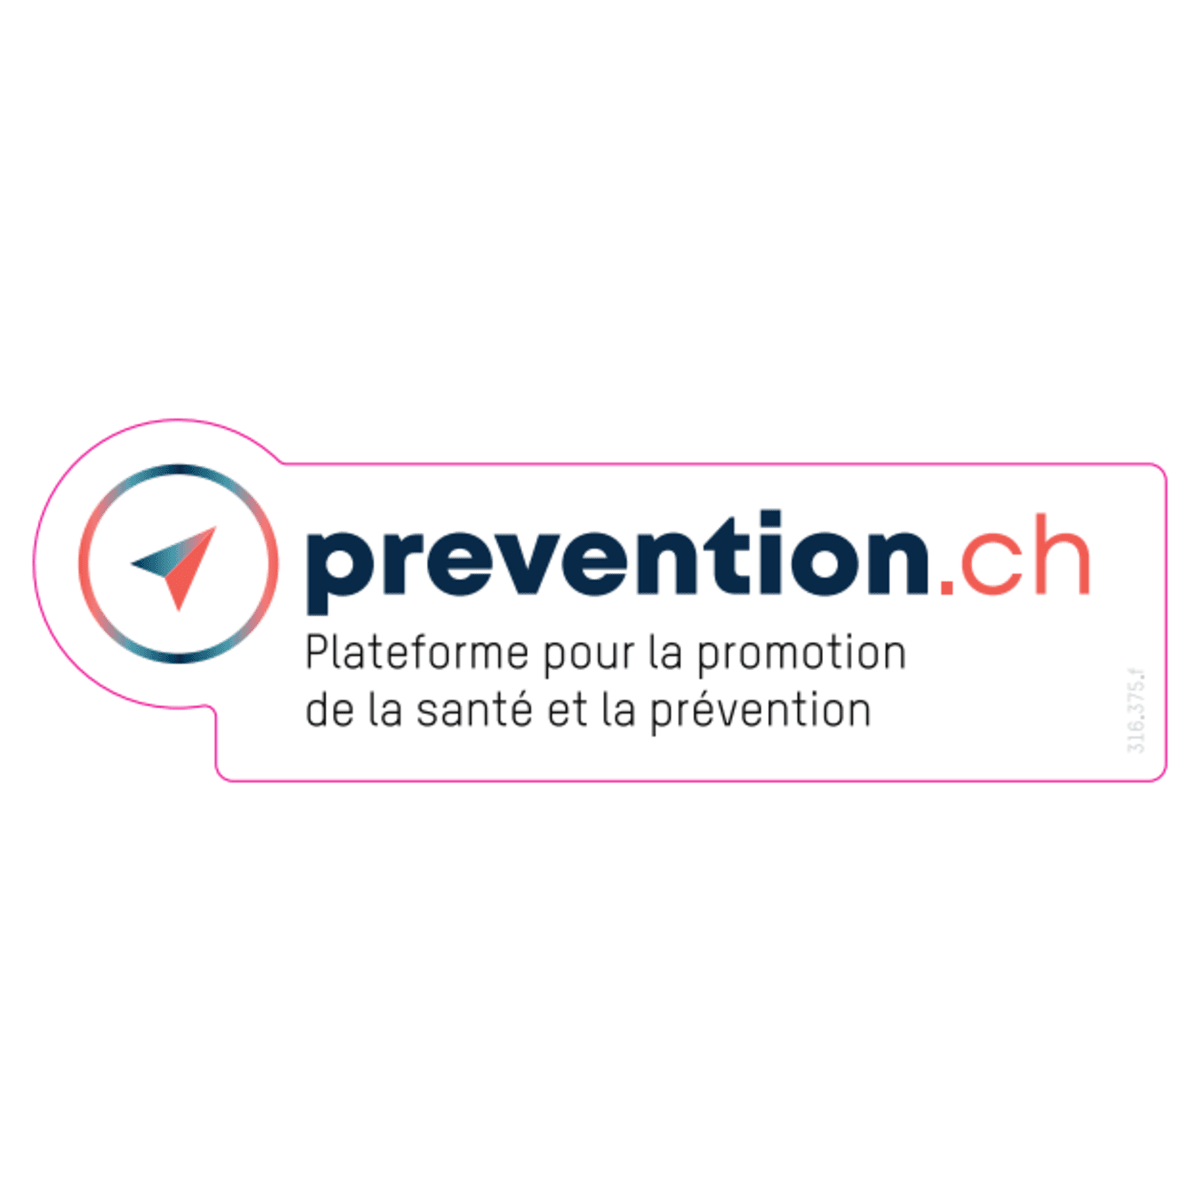 Autocollant Prevention.ch